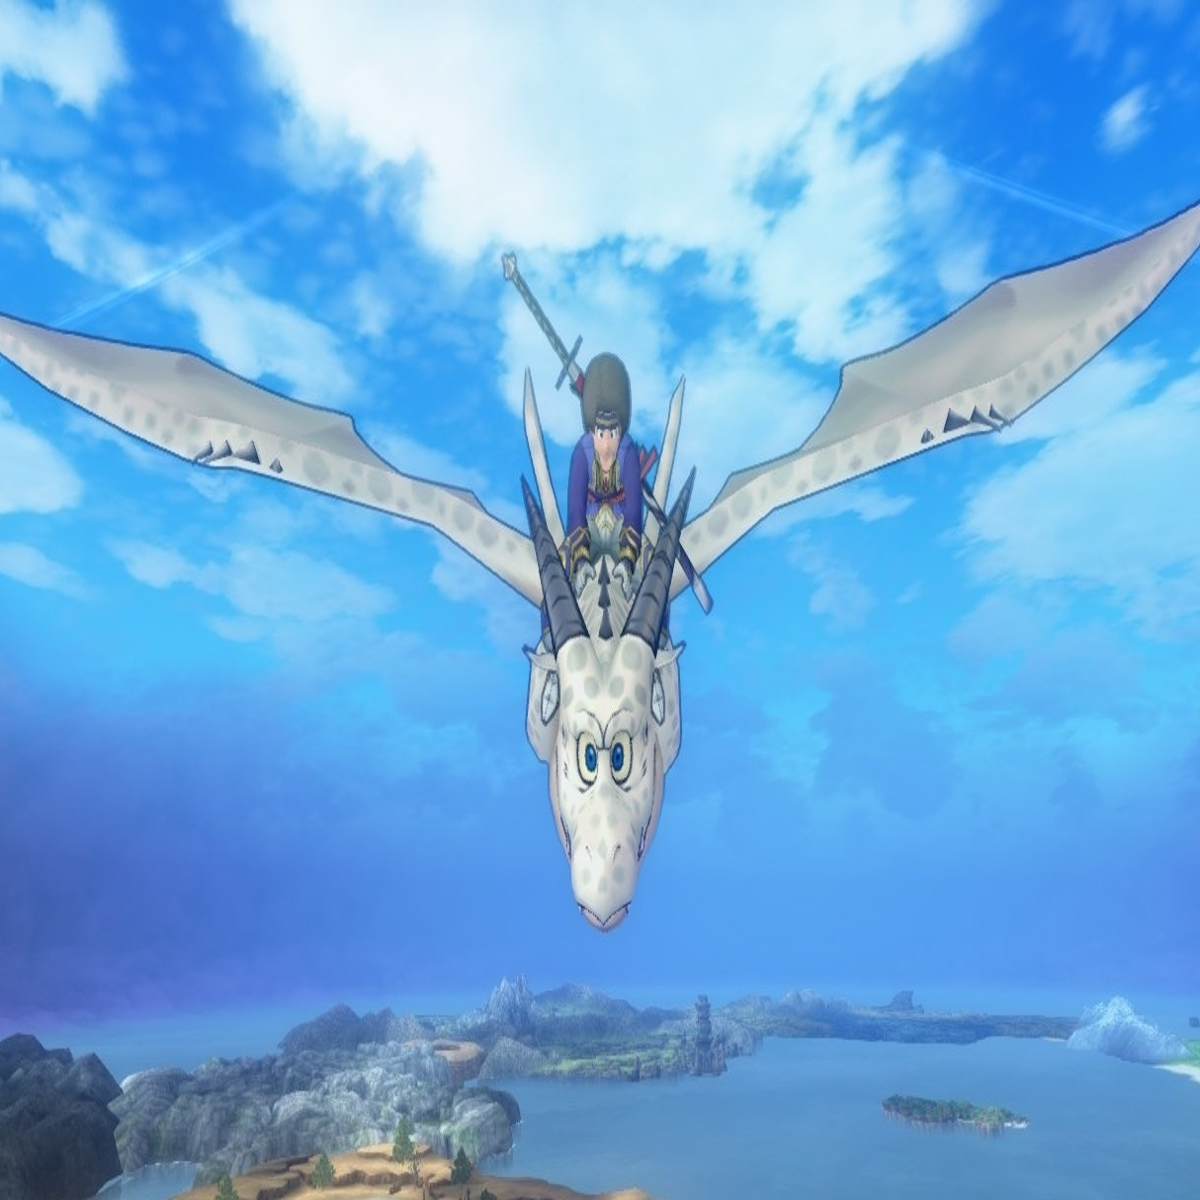 Dragon Quest X será RPG Online para Wii e Wii U em 2012